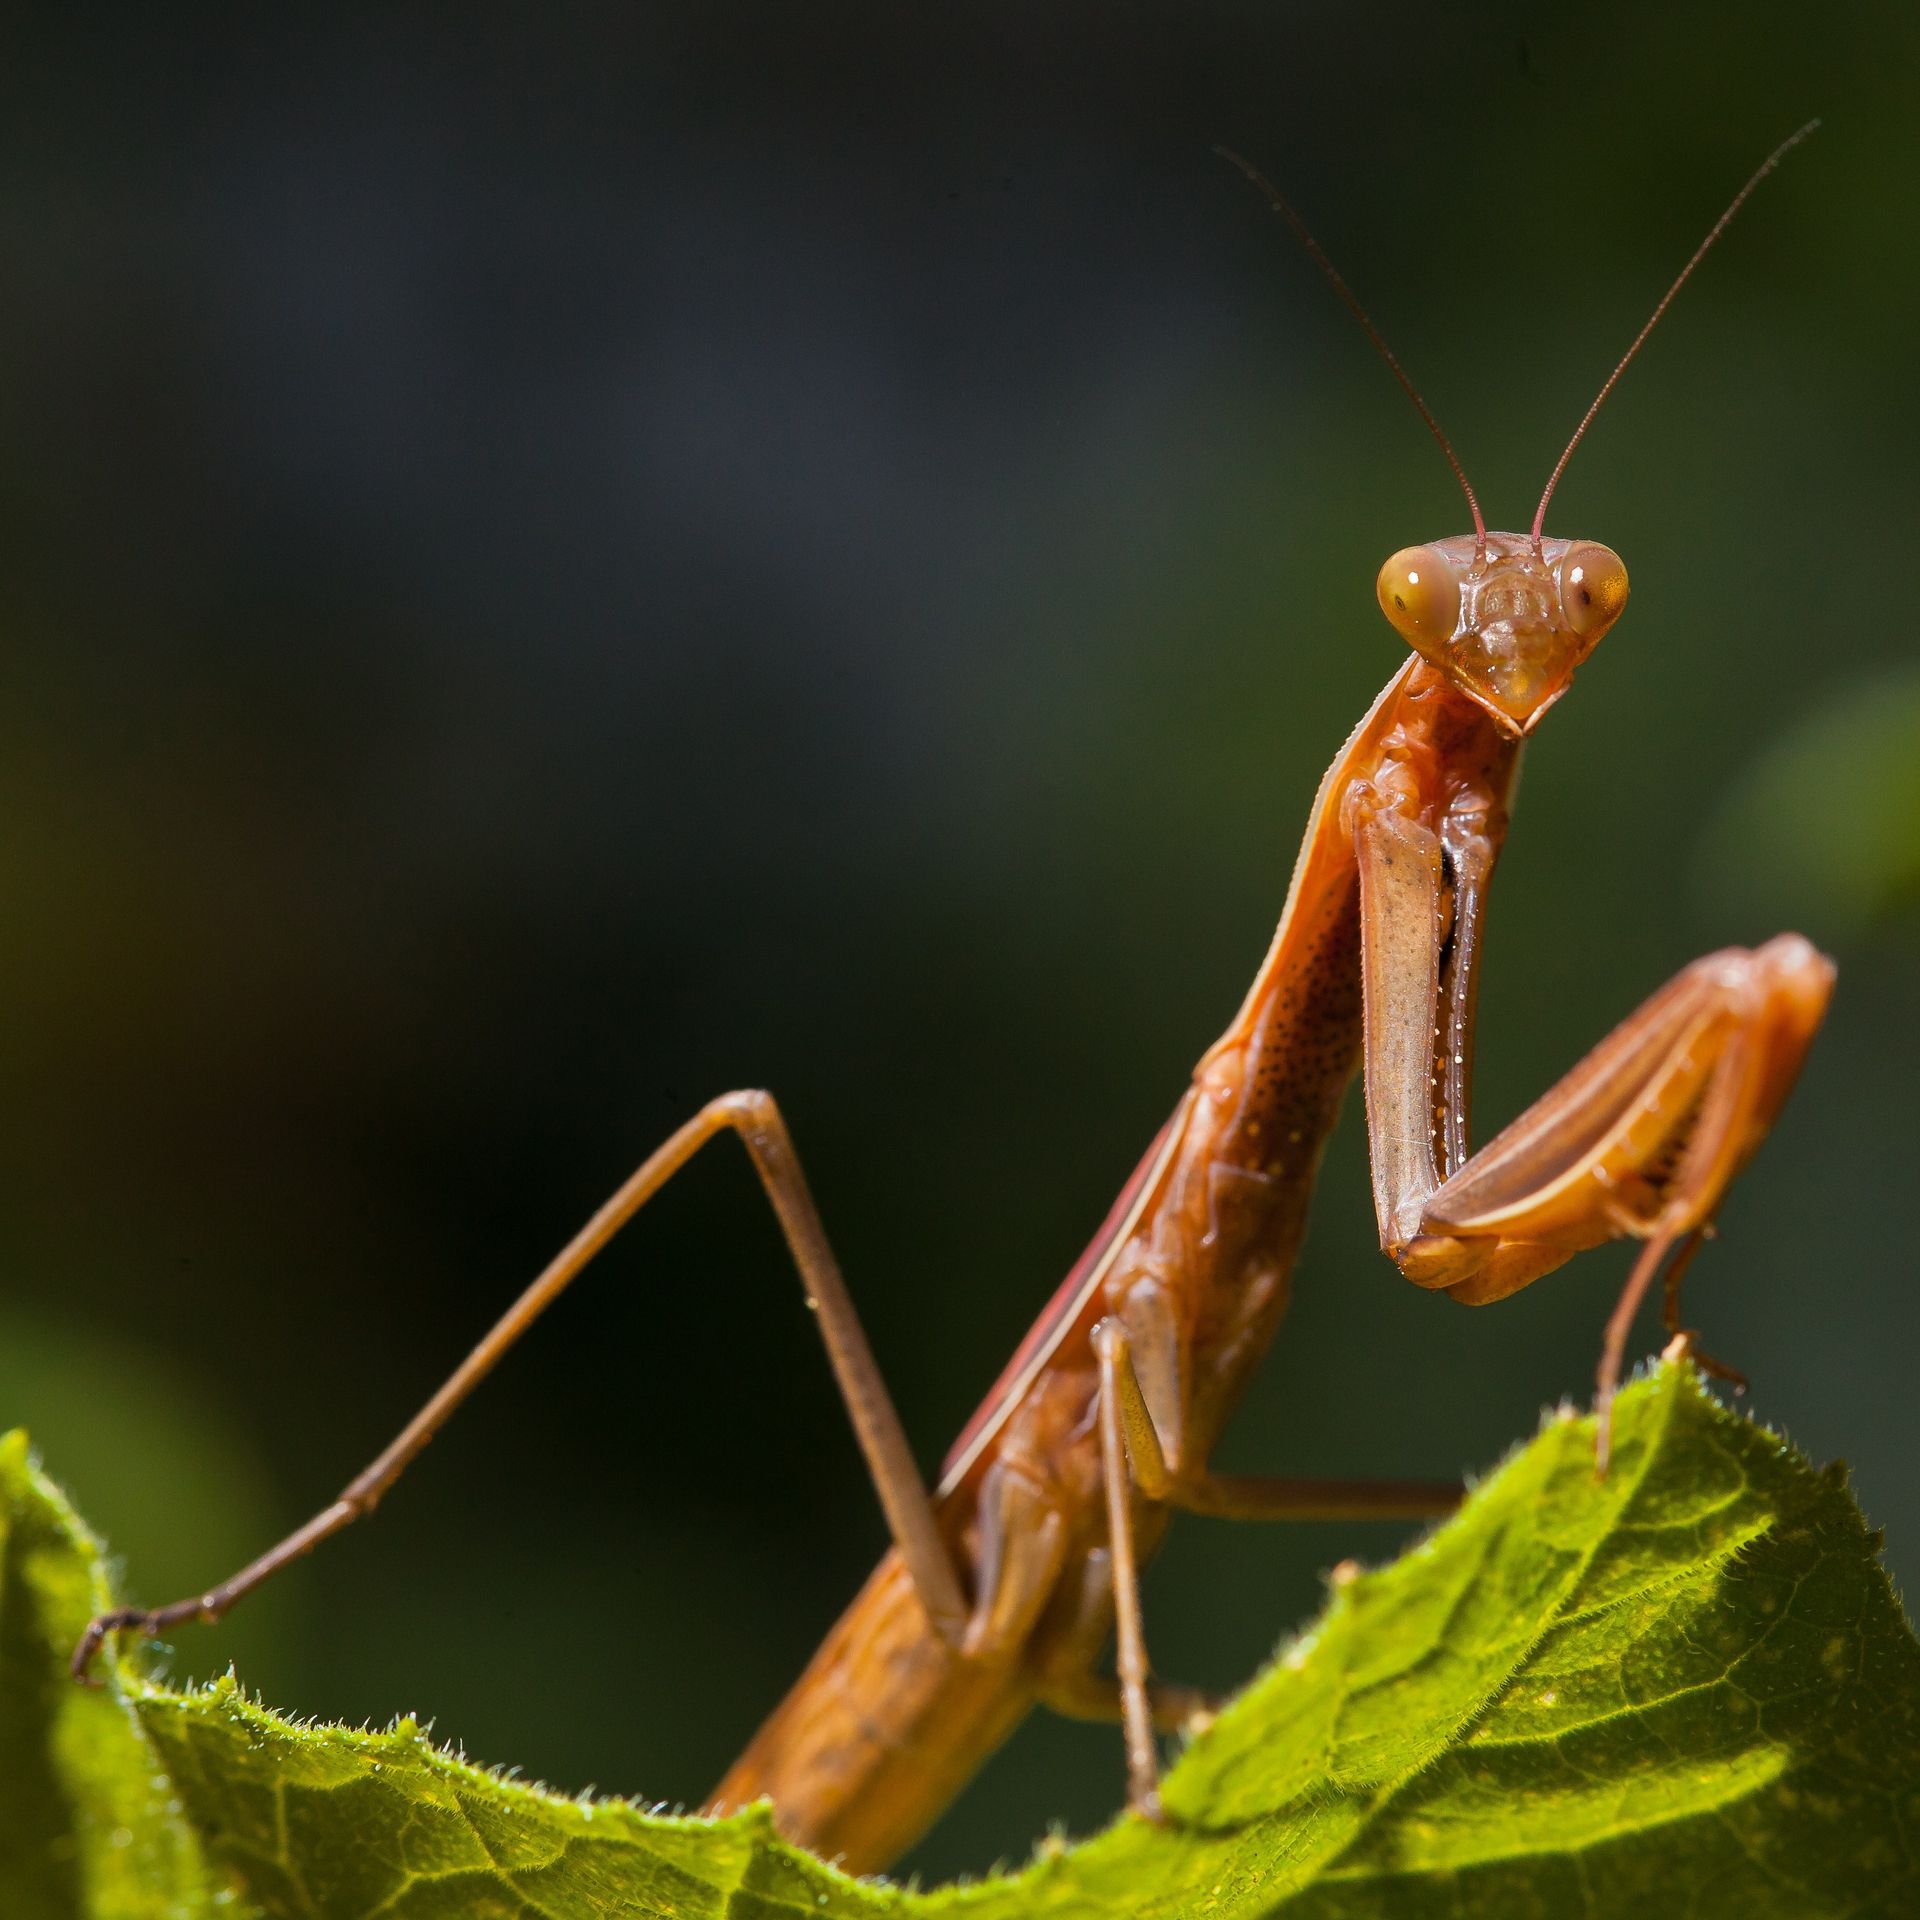 A portrait of a praying mantis on a leaf.